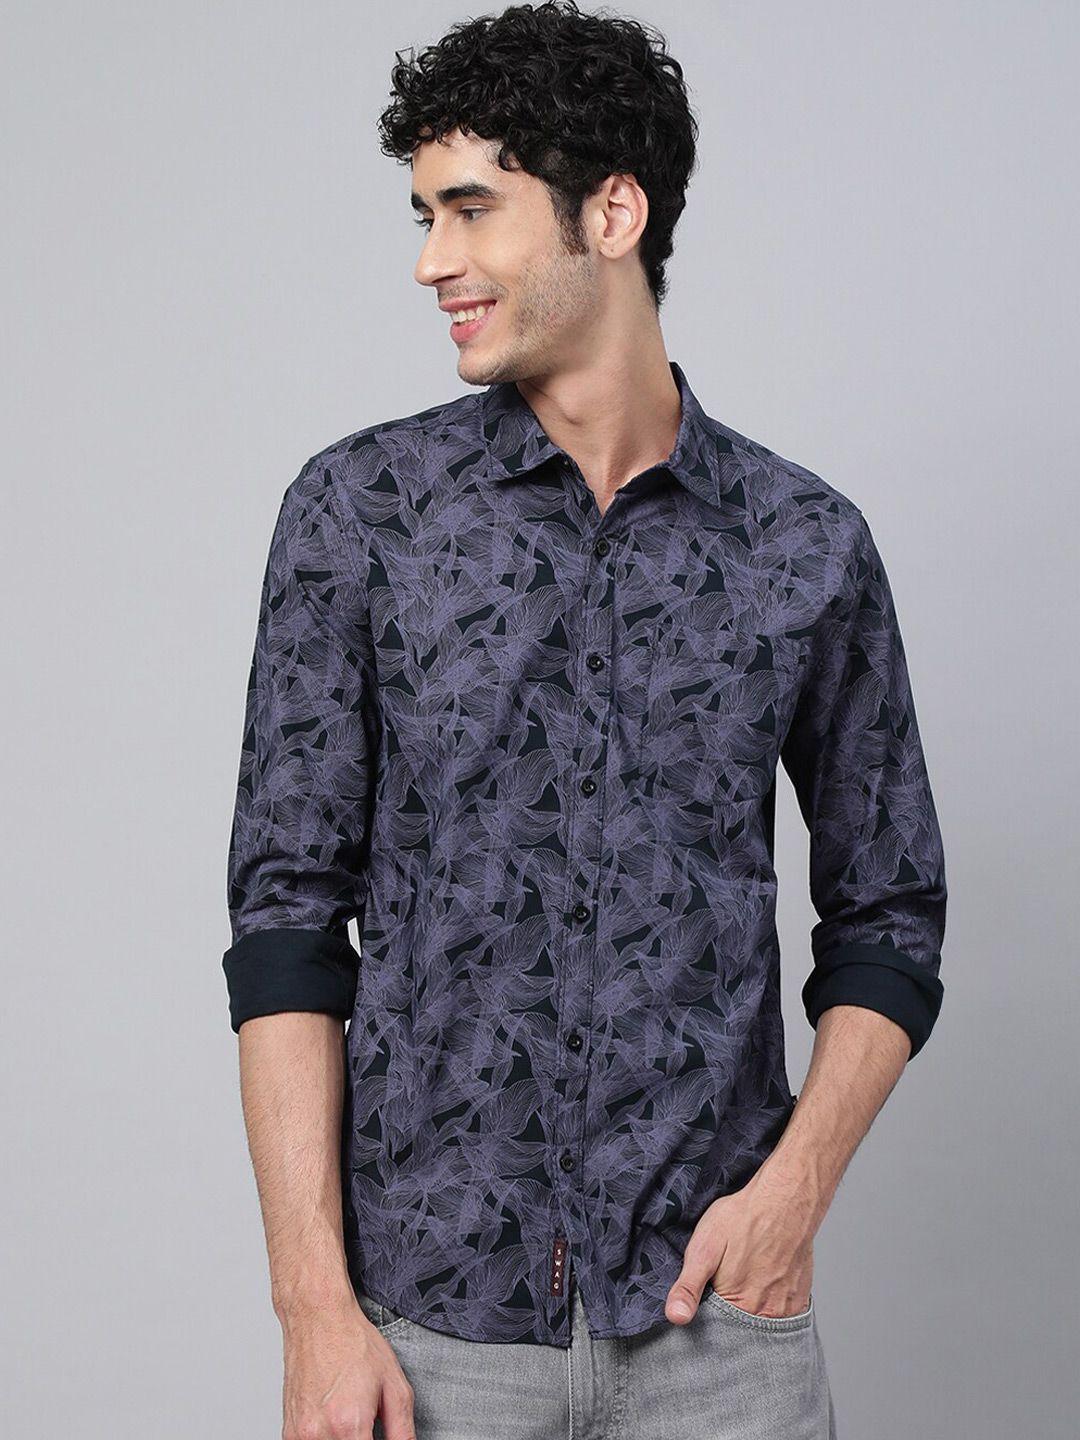 veirdo men black floral printed casual cotton shirt